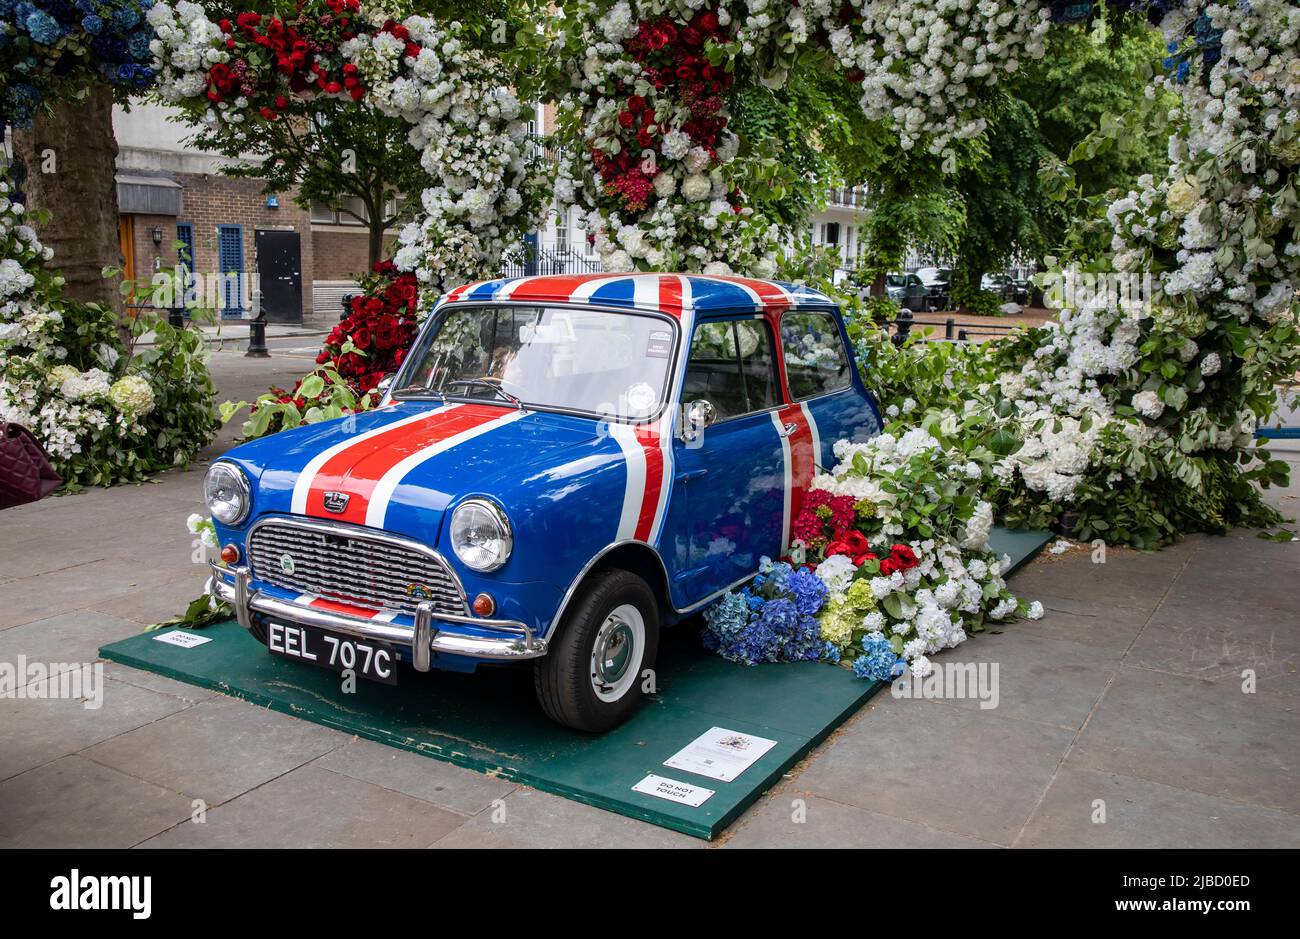 Londres, 26 de mayo de 2022: Las calles de Chelsea se descodifican con exhibiciones florales para la competencia anual de Chelsea in Bloom Foto de stock